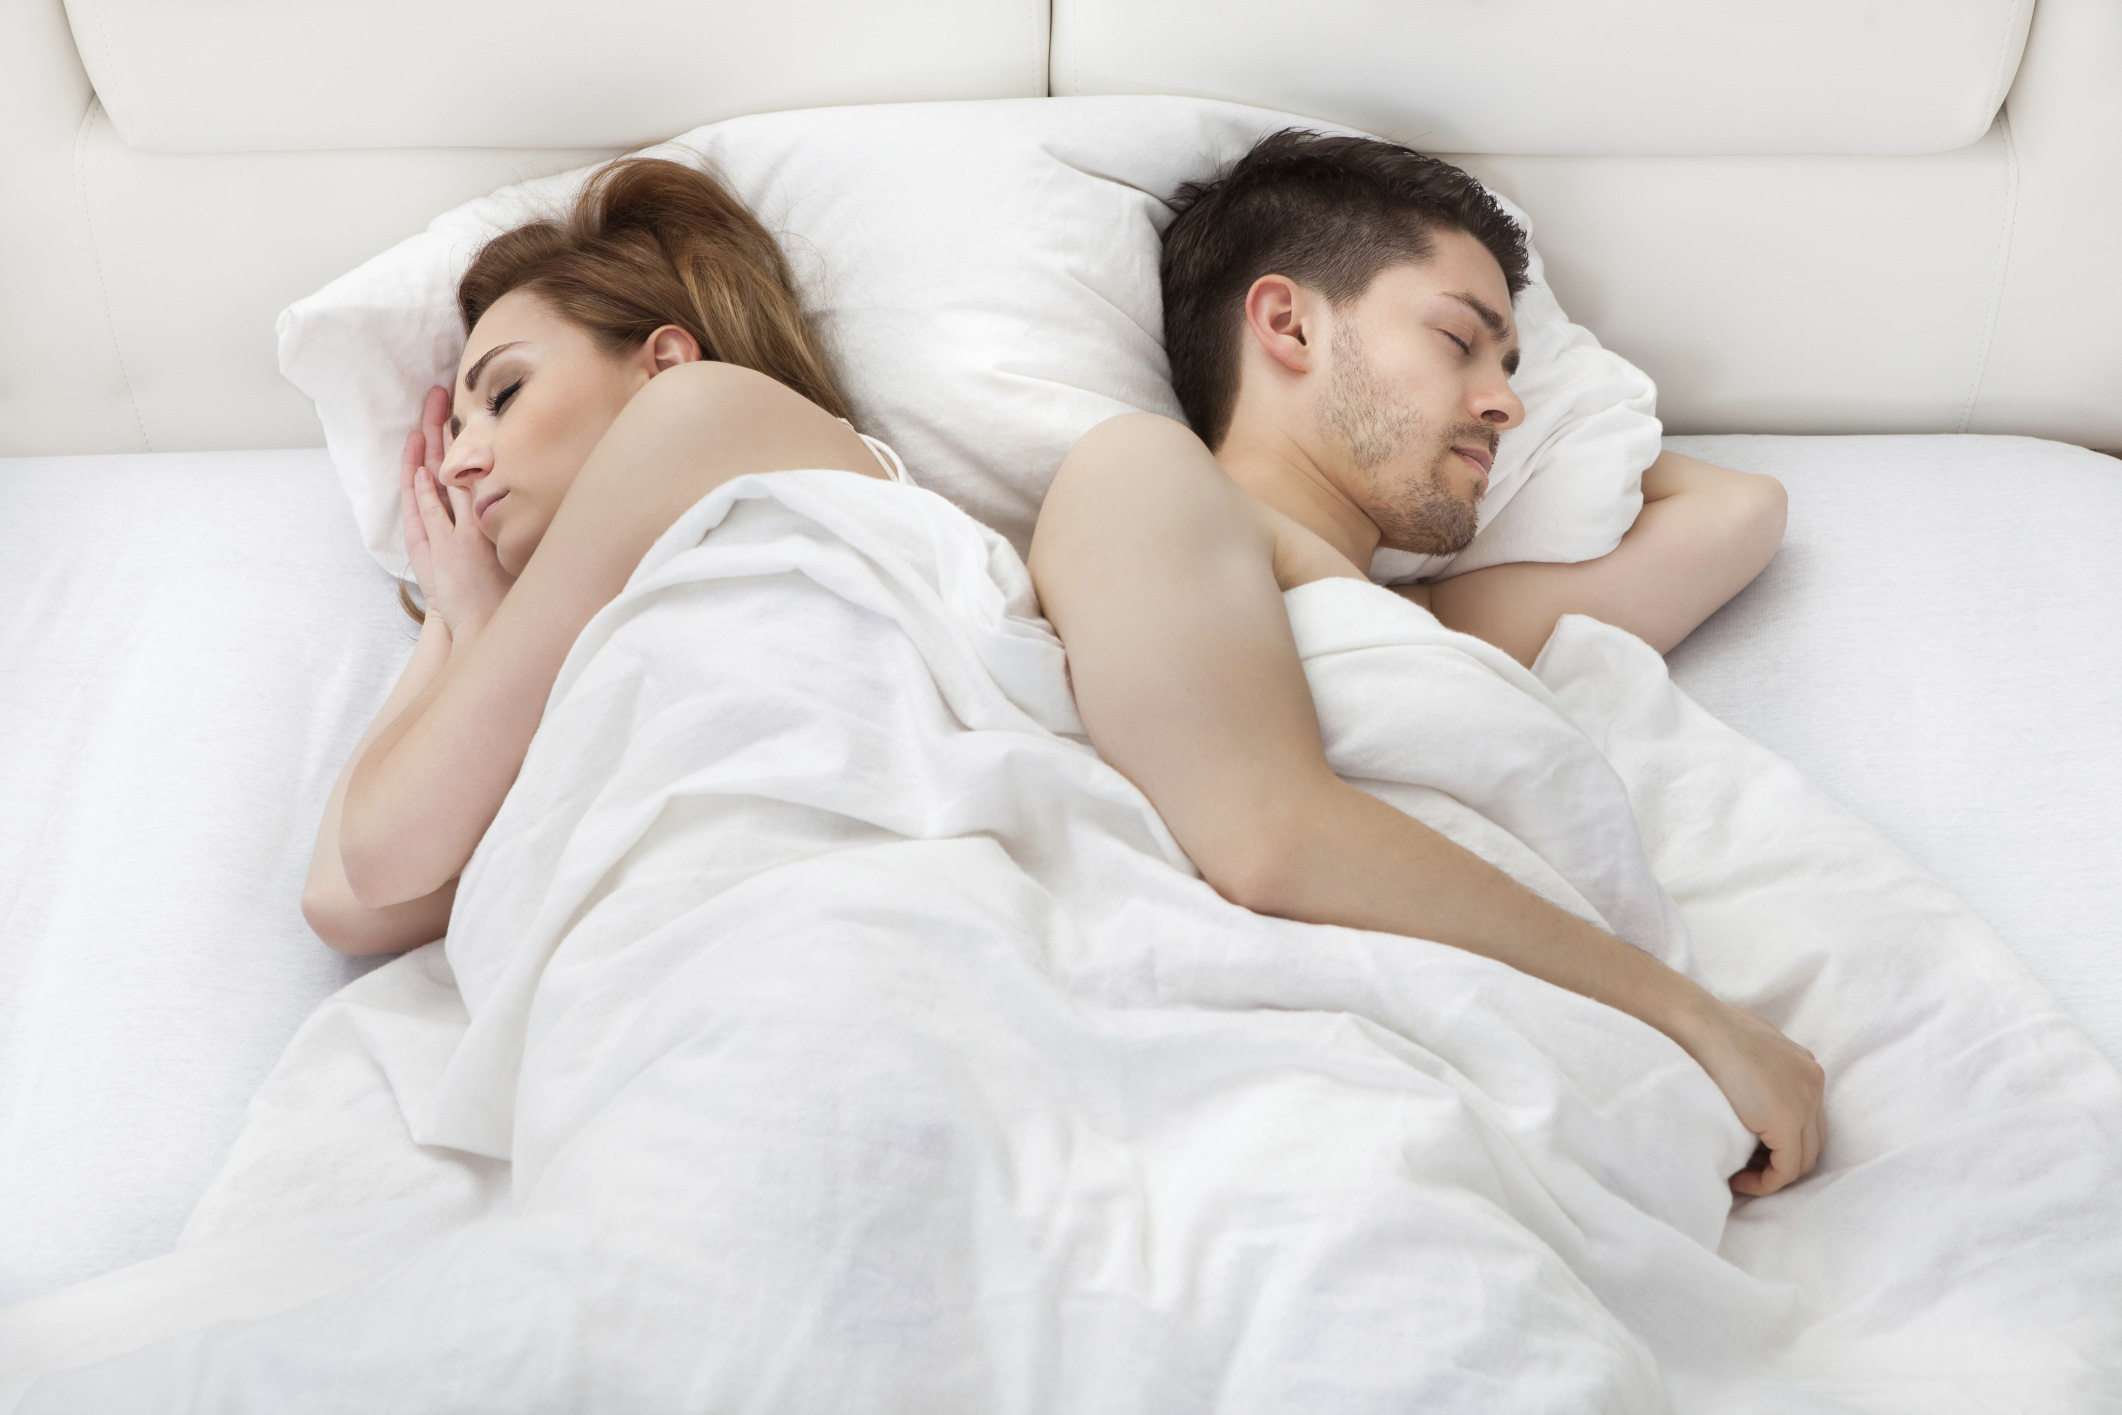 Фото мужчины и женщины на кровати фото